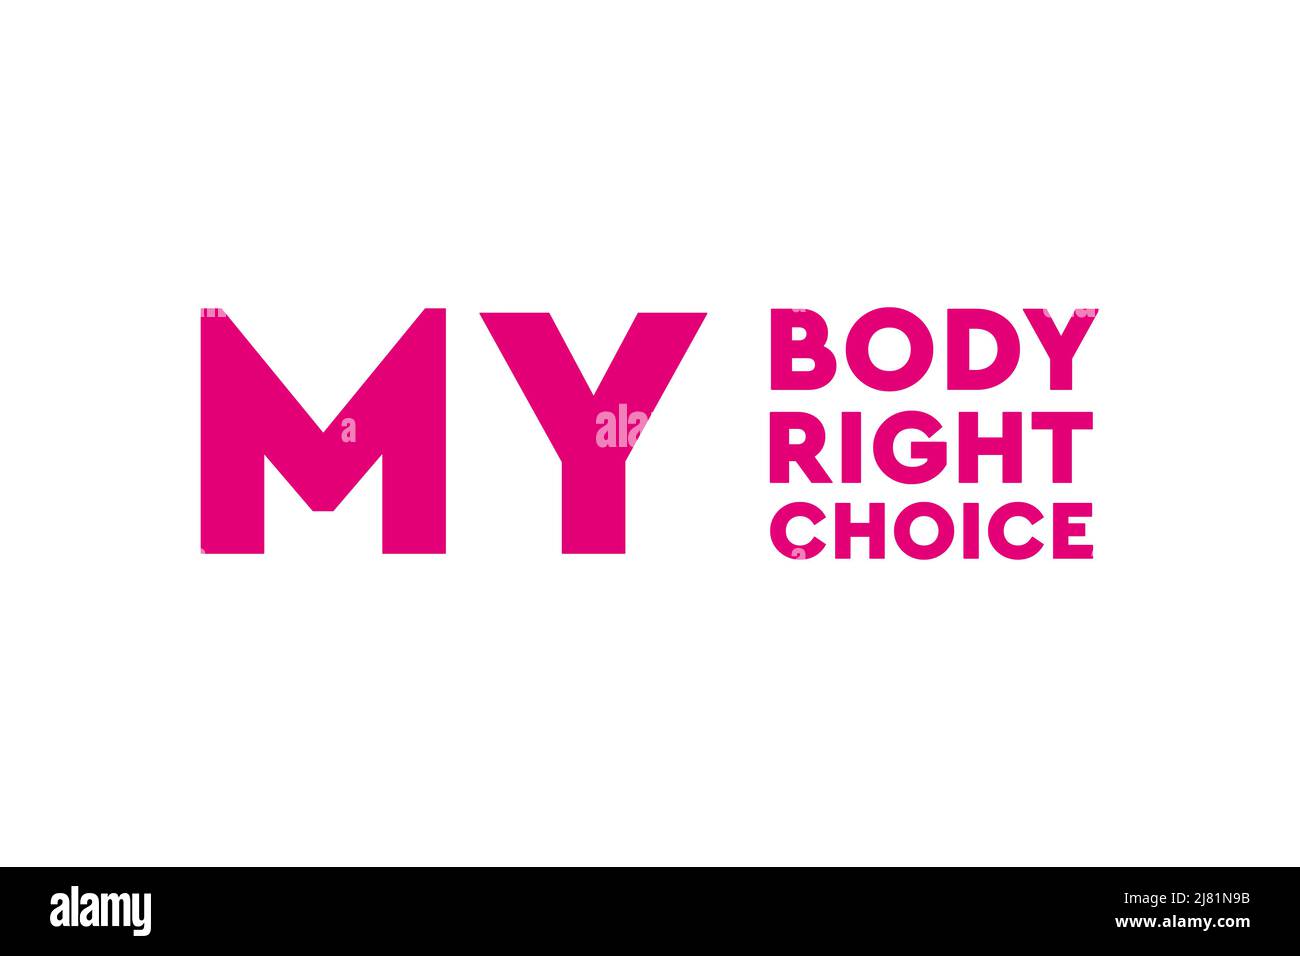 Abtreibung legal halten. Mein Körper, mein Recht, meine Wahl. Pro Abtreibung Poster, Banner oder Hintergrund Stockfoto